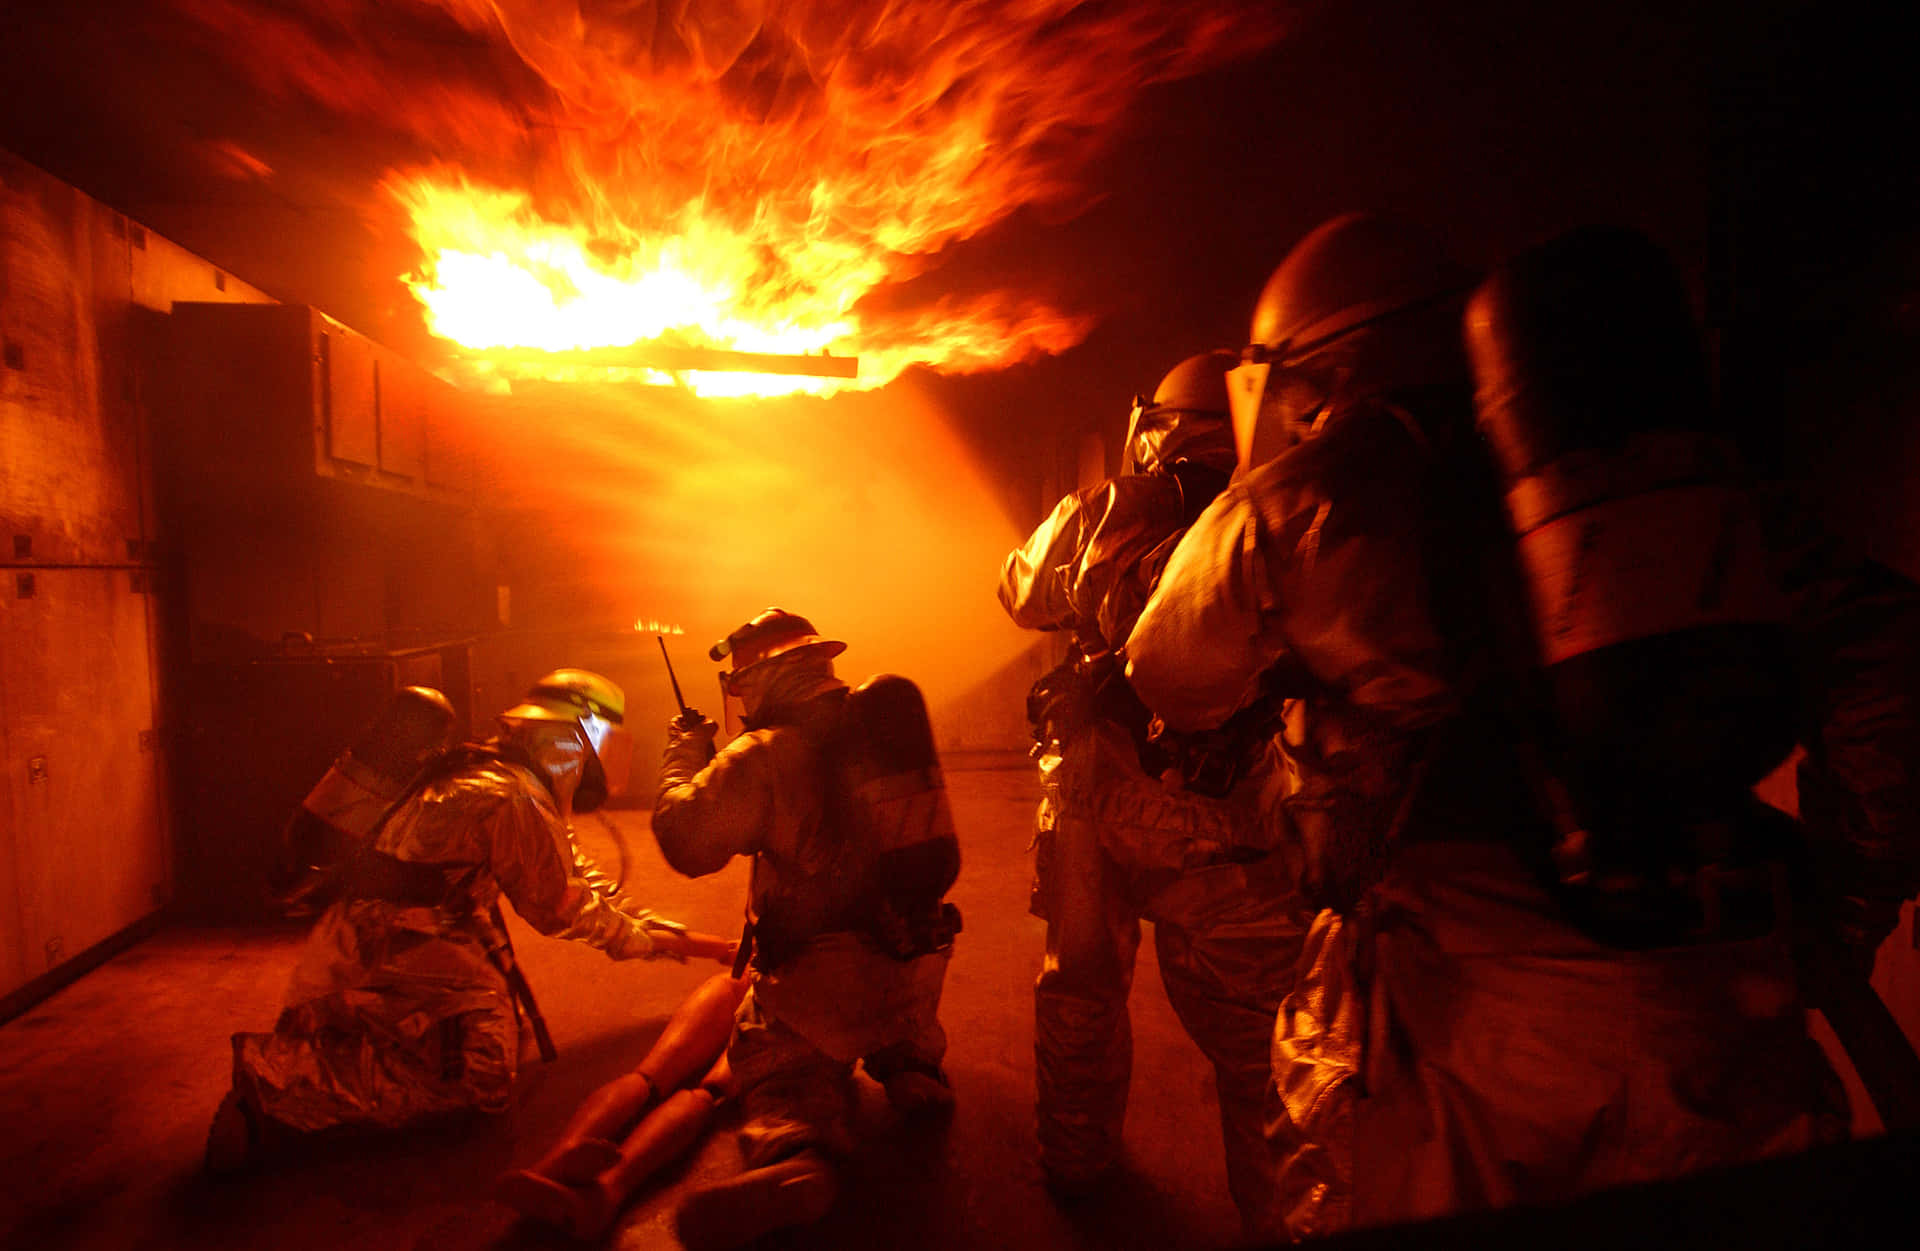 Brave fireman tackling a burning warehouse